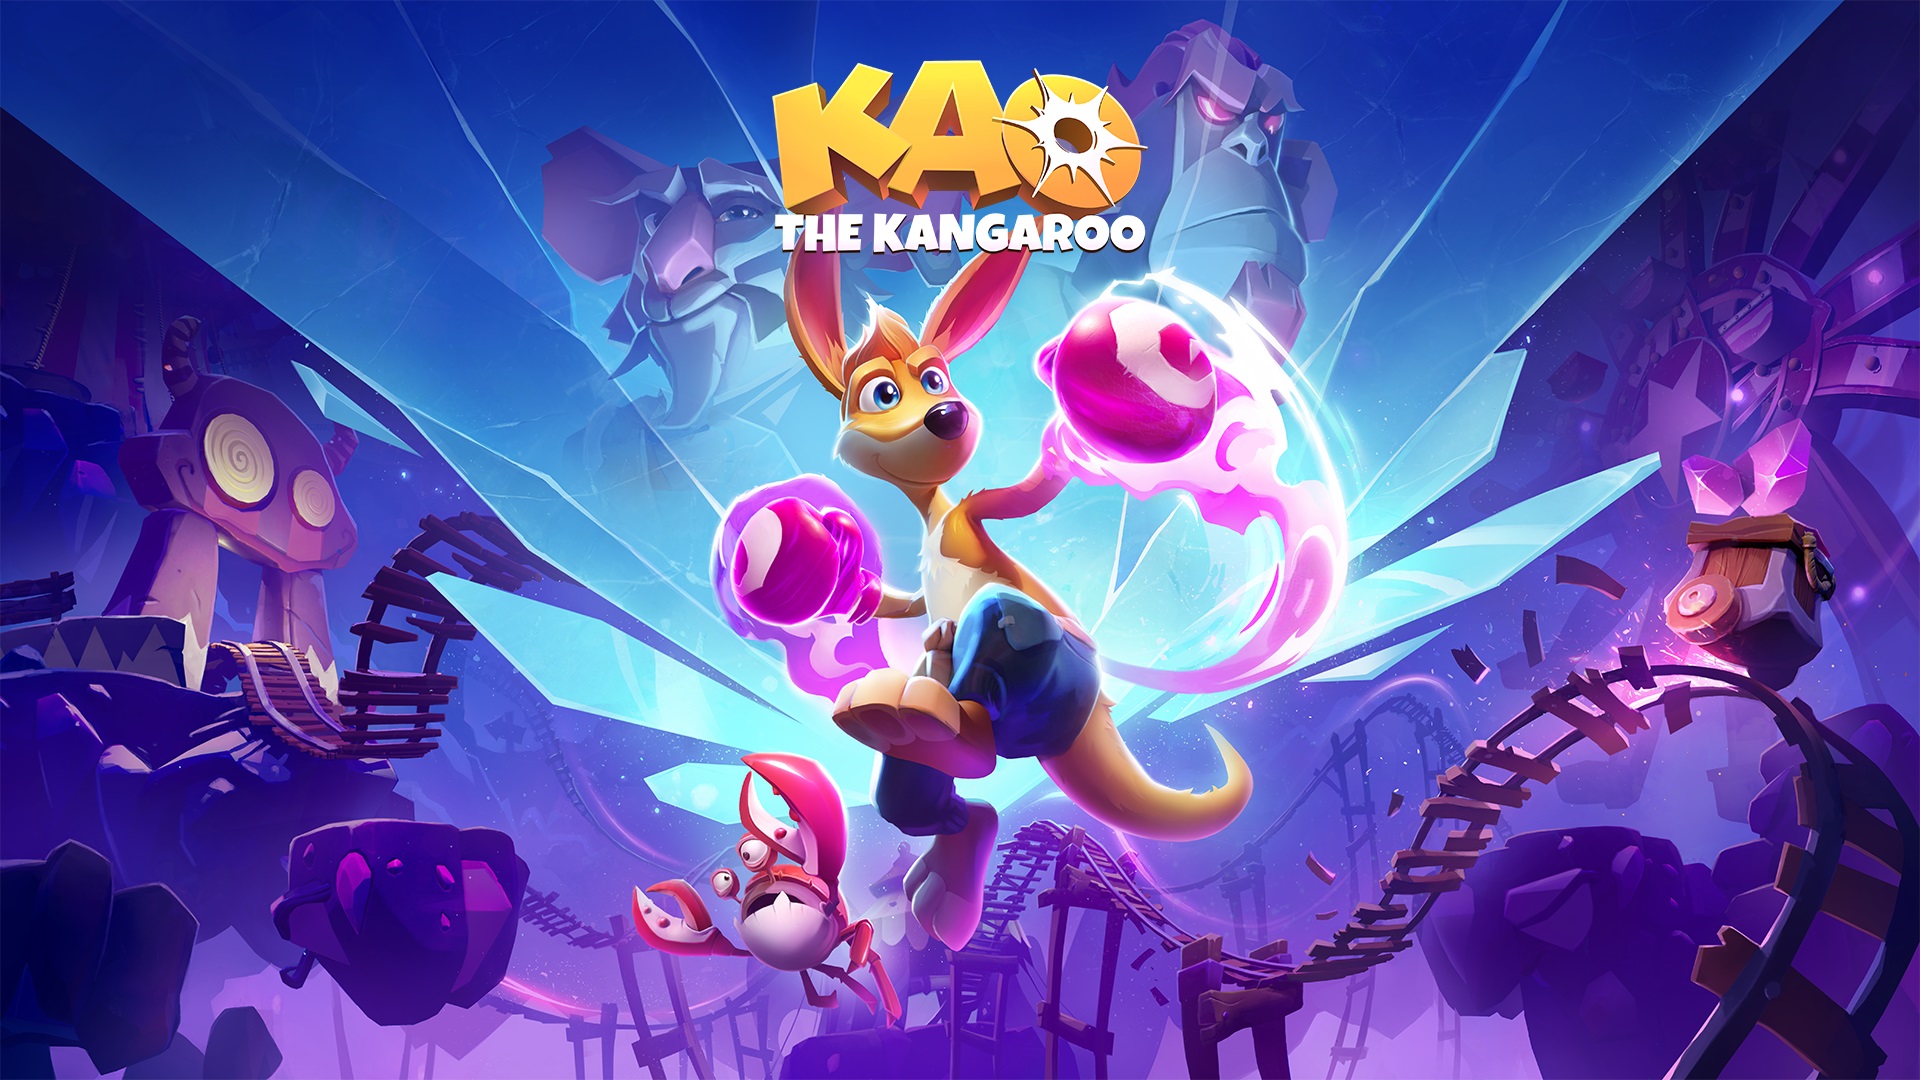 New Kao the Kangaroo Game Launches